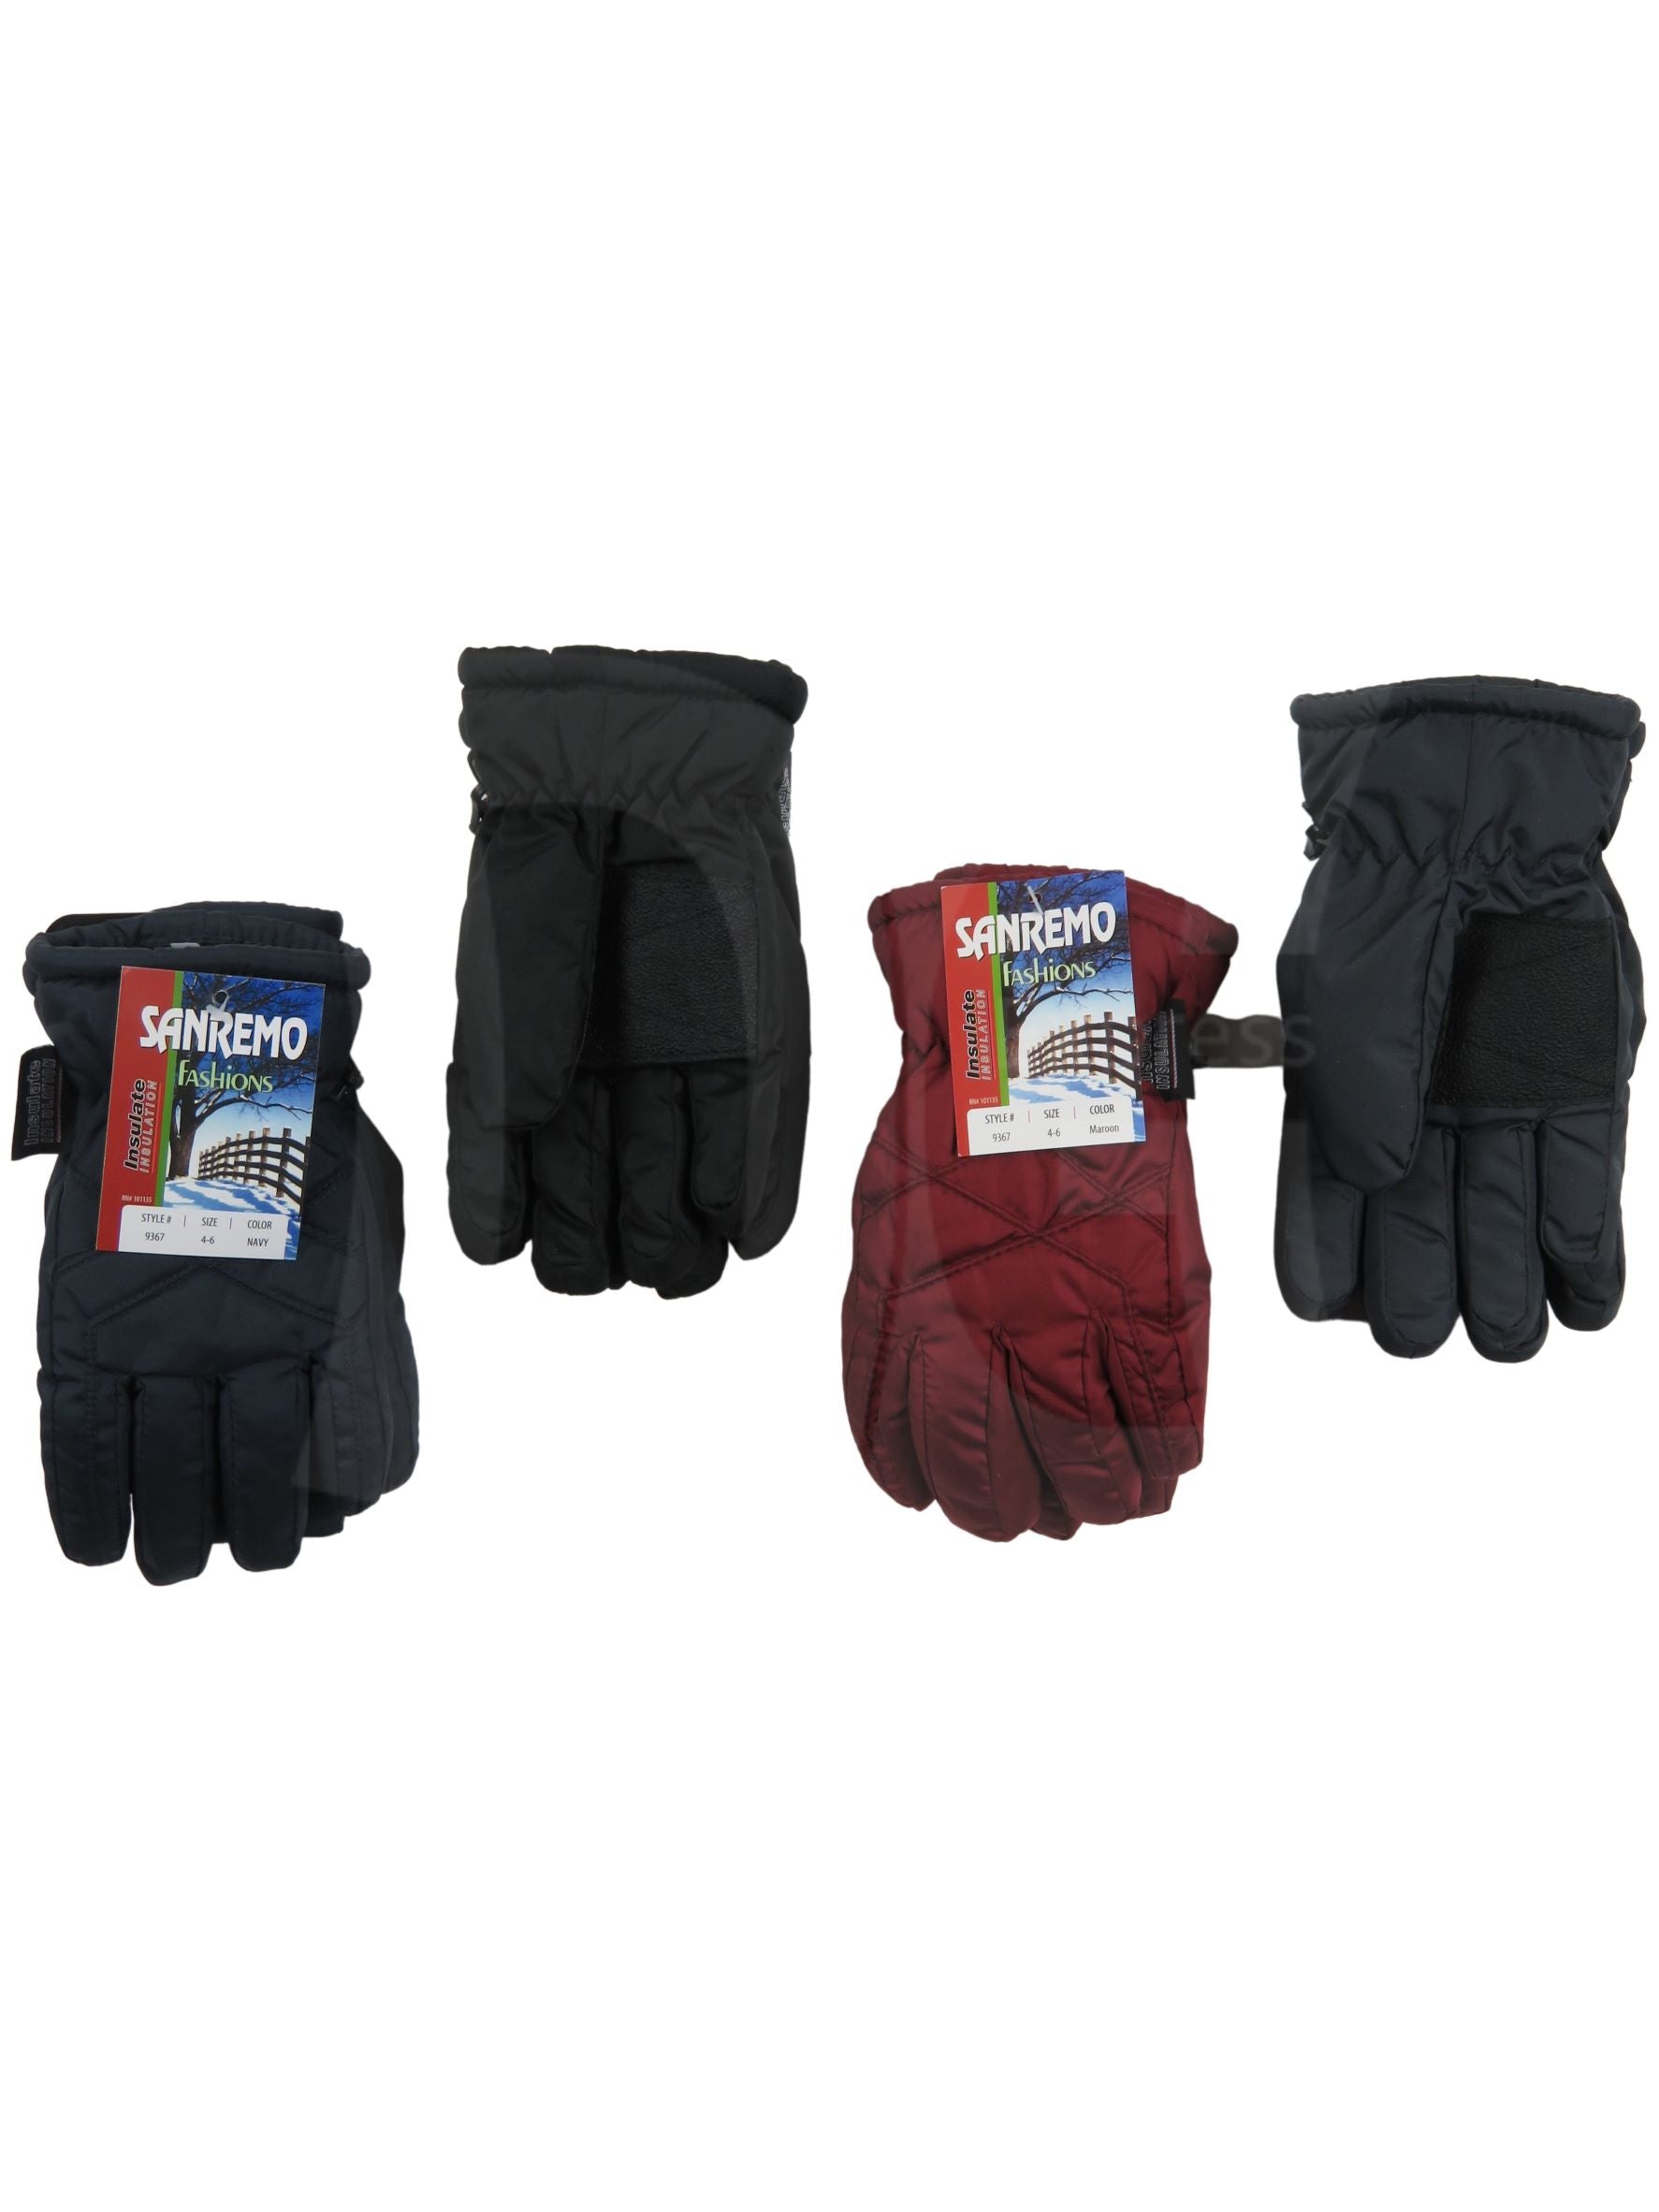 Sanremo Kid's Ski Gloves